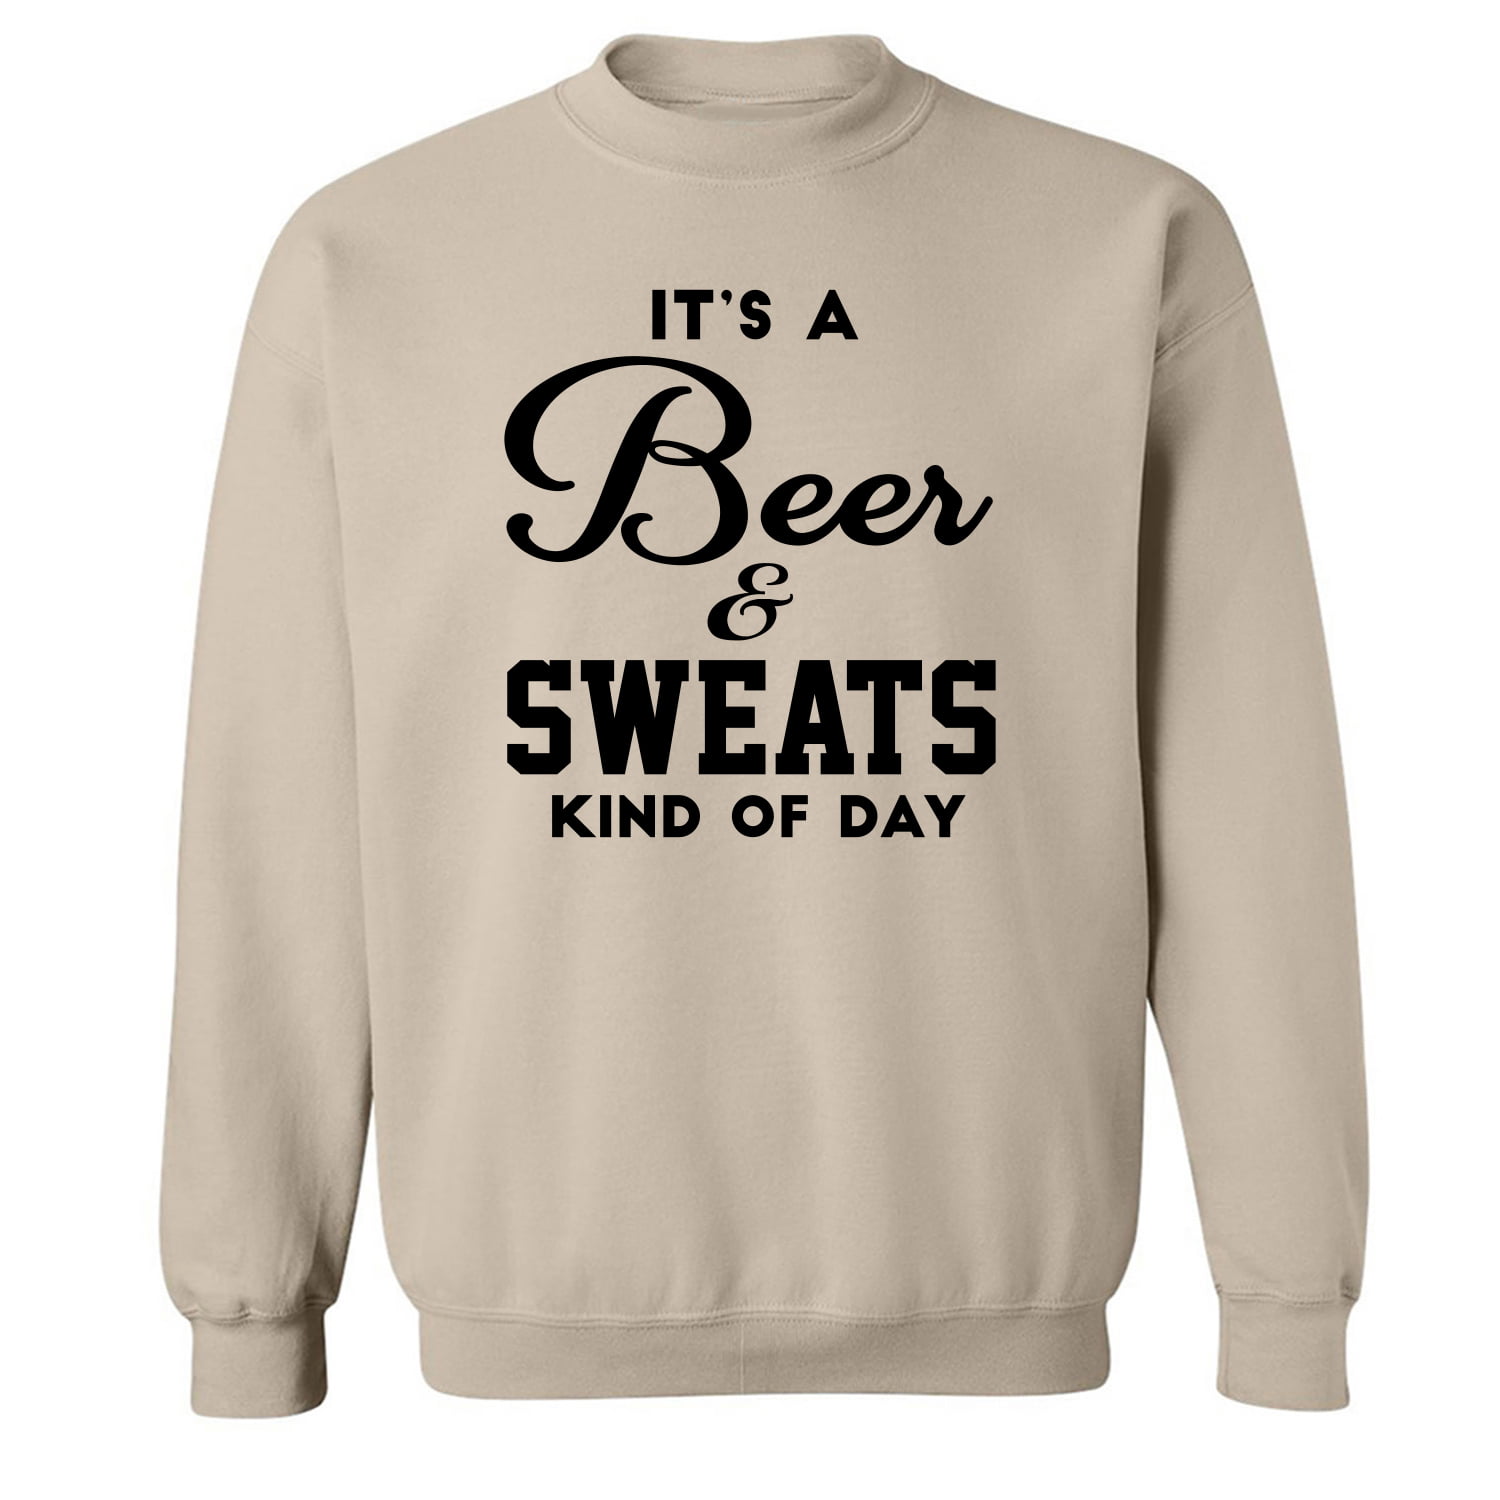 Its a Beer & Sweats Kind of Day Crewneck Sweatshirt 